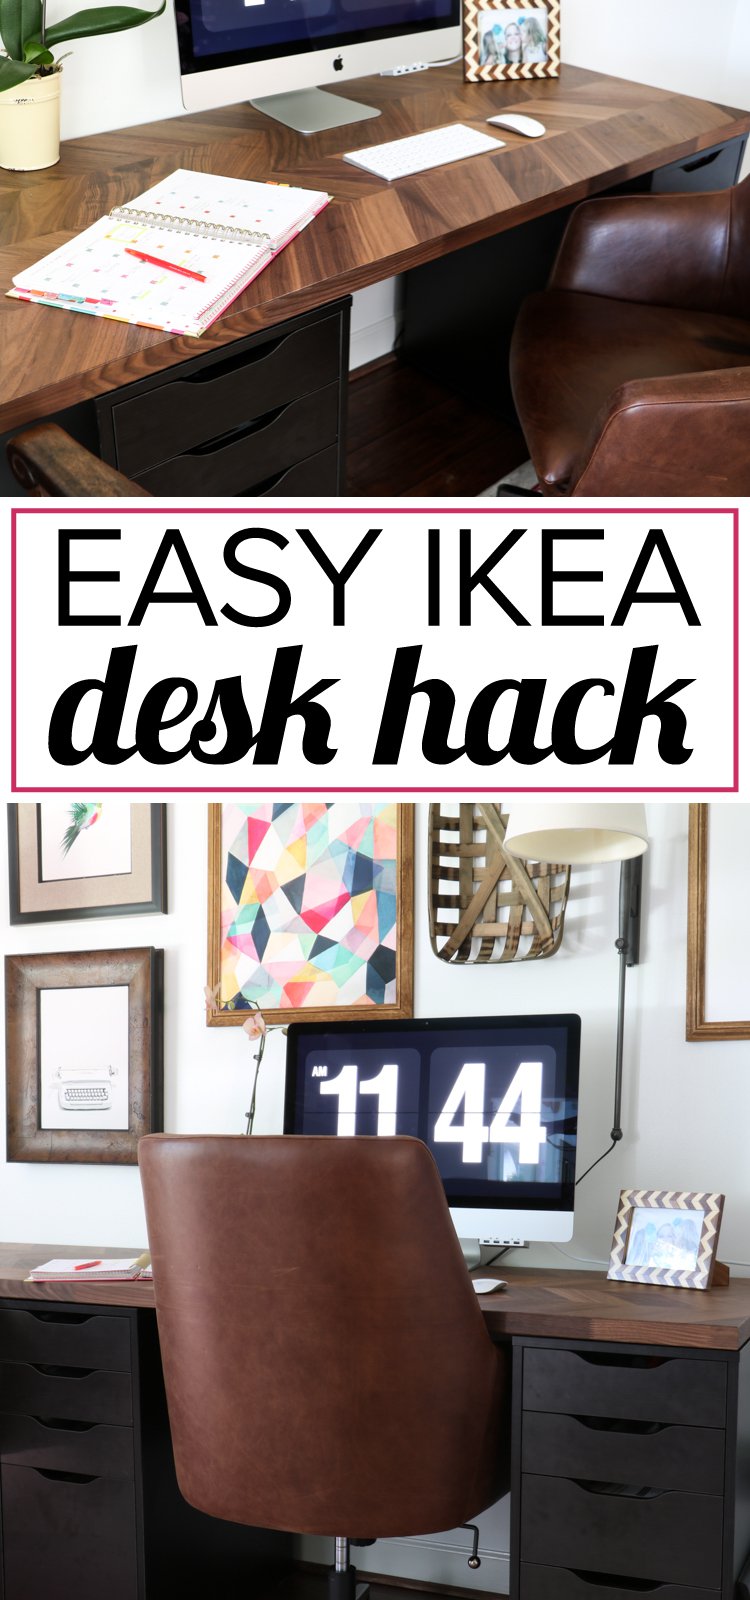 21 Ikea Desk Hack simphome com